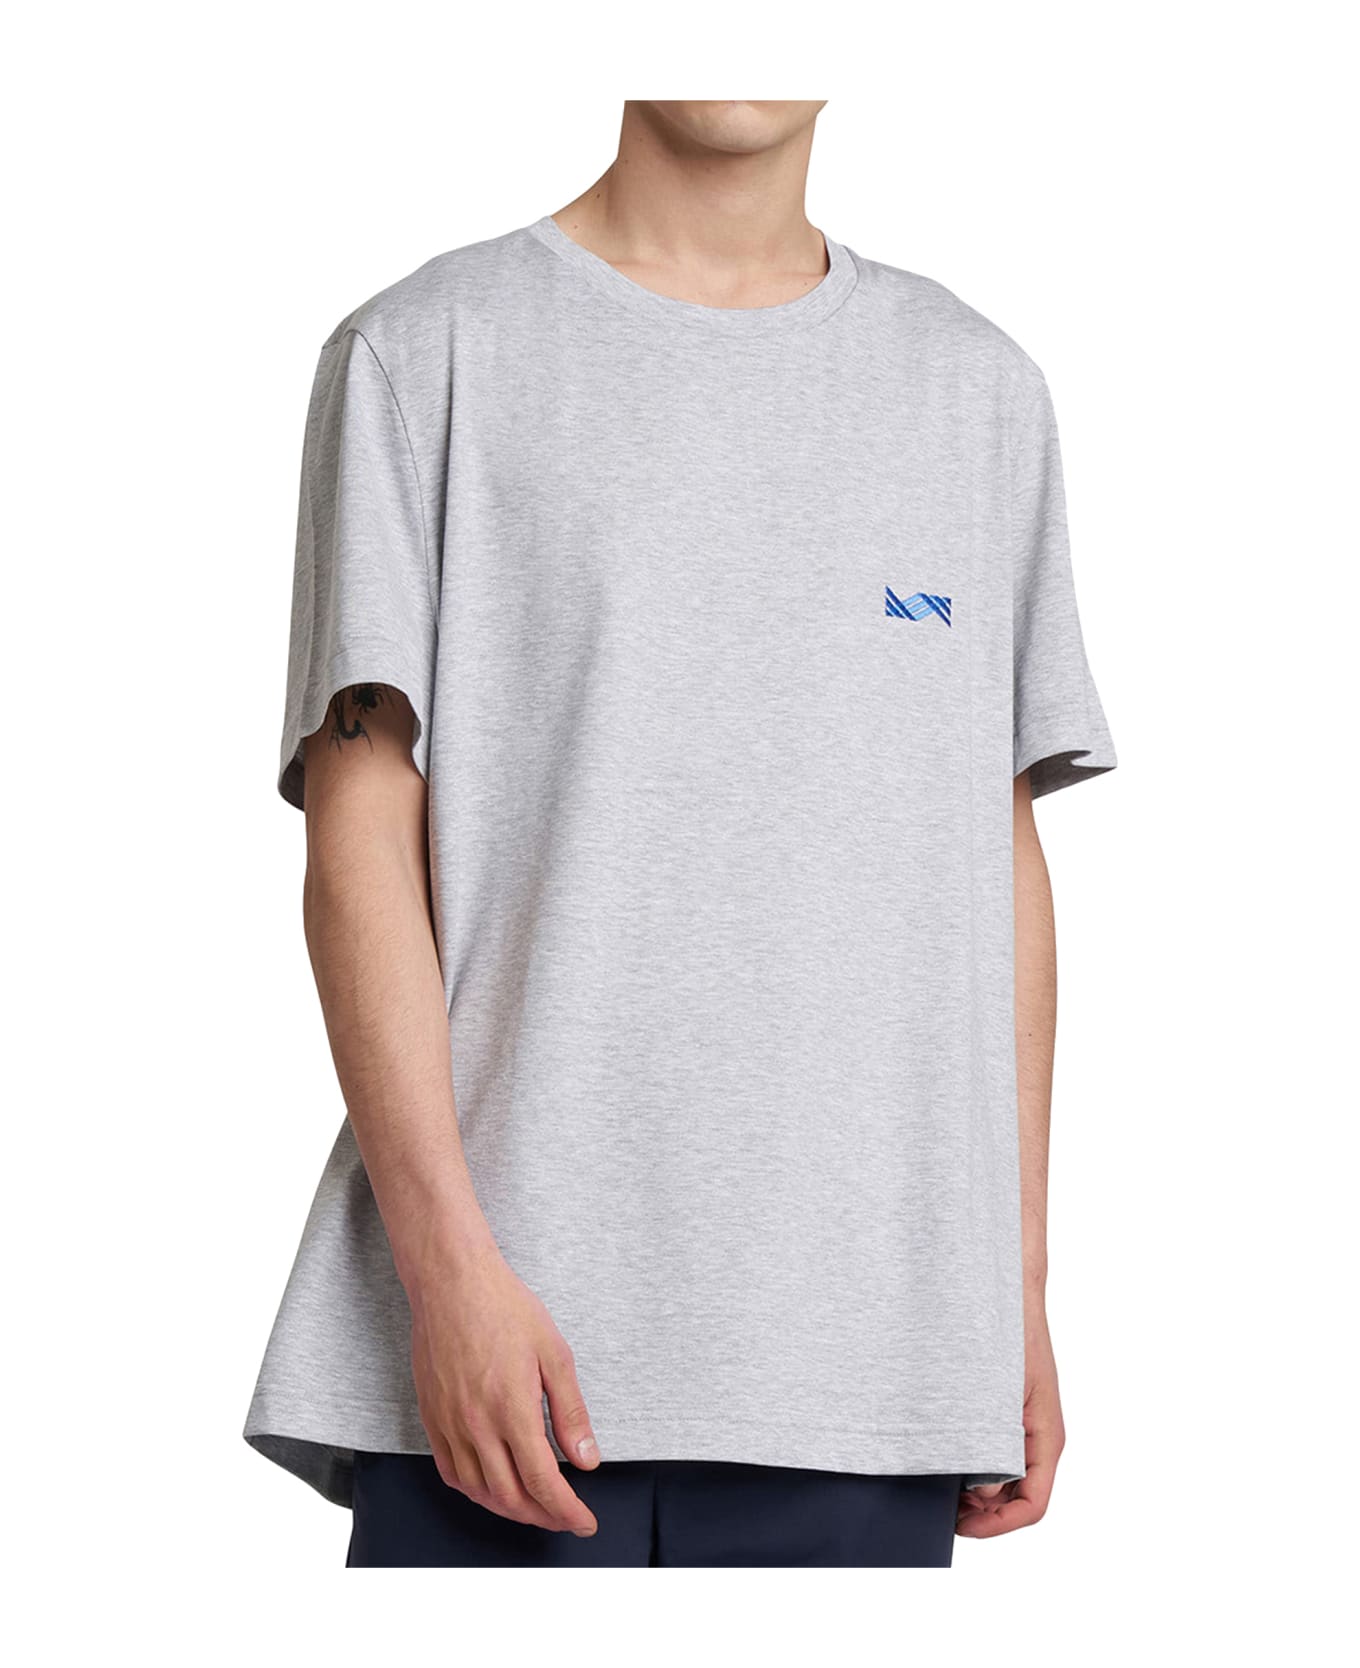 Kiton T-shirt Cotton - PEARL GREY シャツ